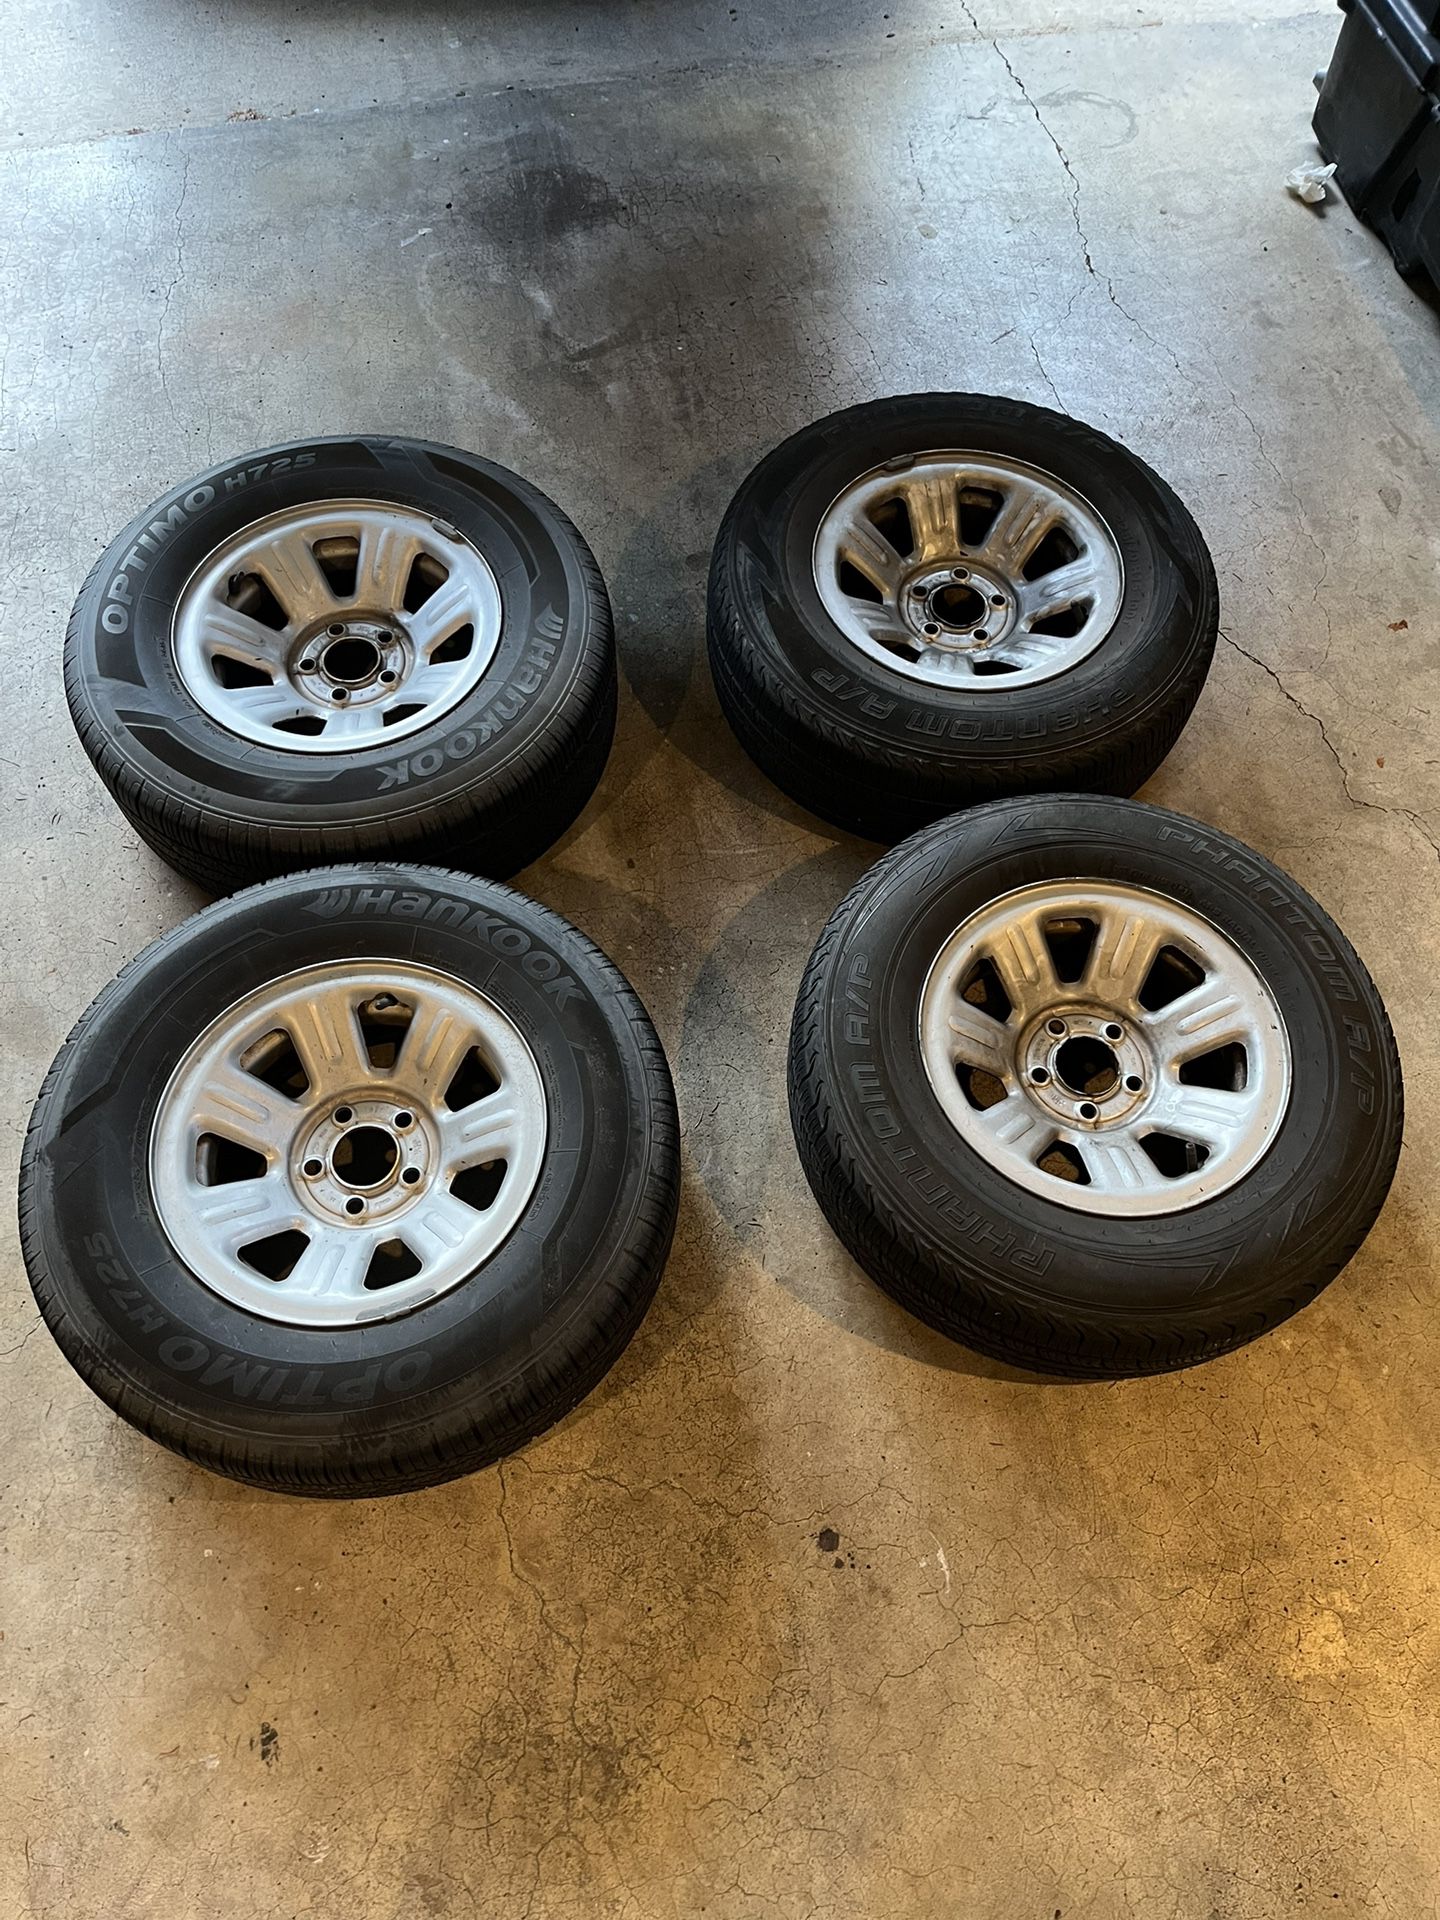 Ranger Wheels + Tires